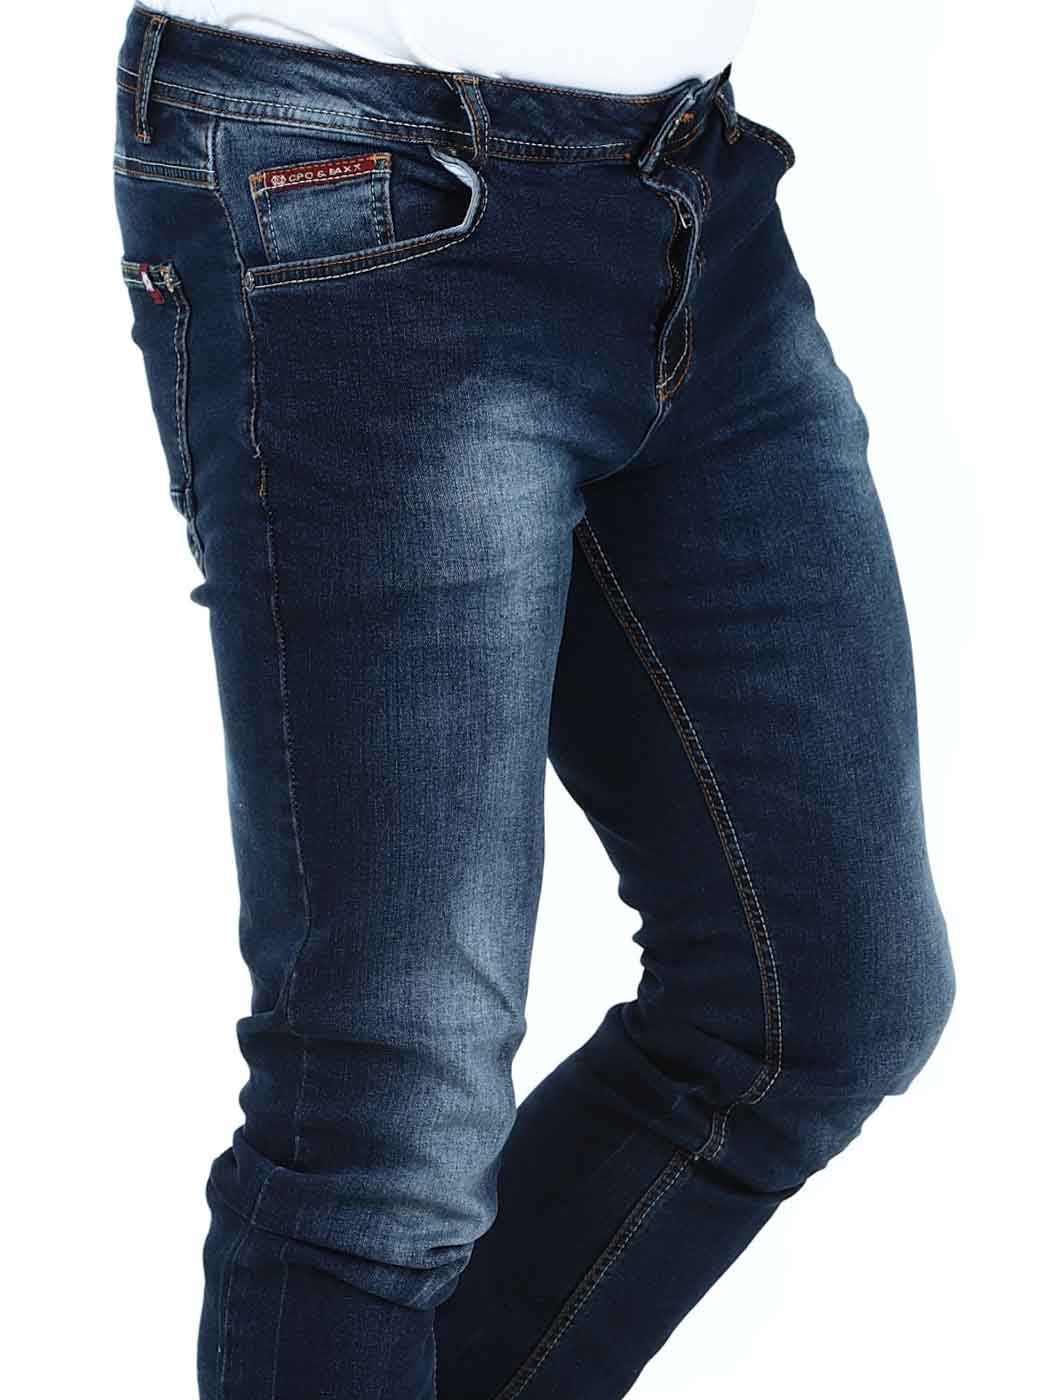 Callan Cipo  Baxx Jeans - Raw Blue_5.jpg